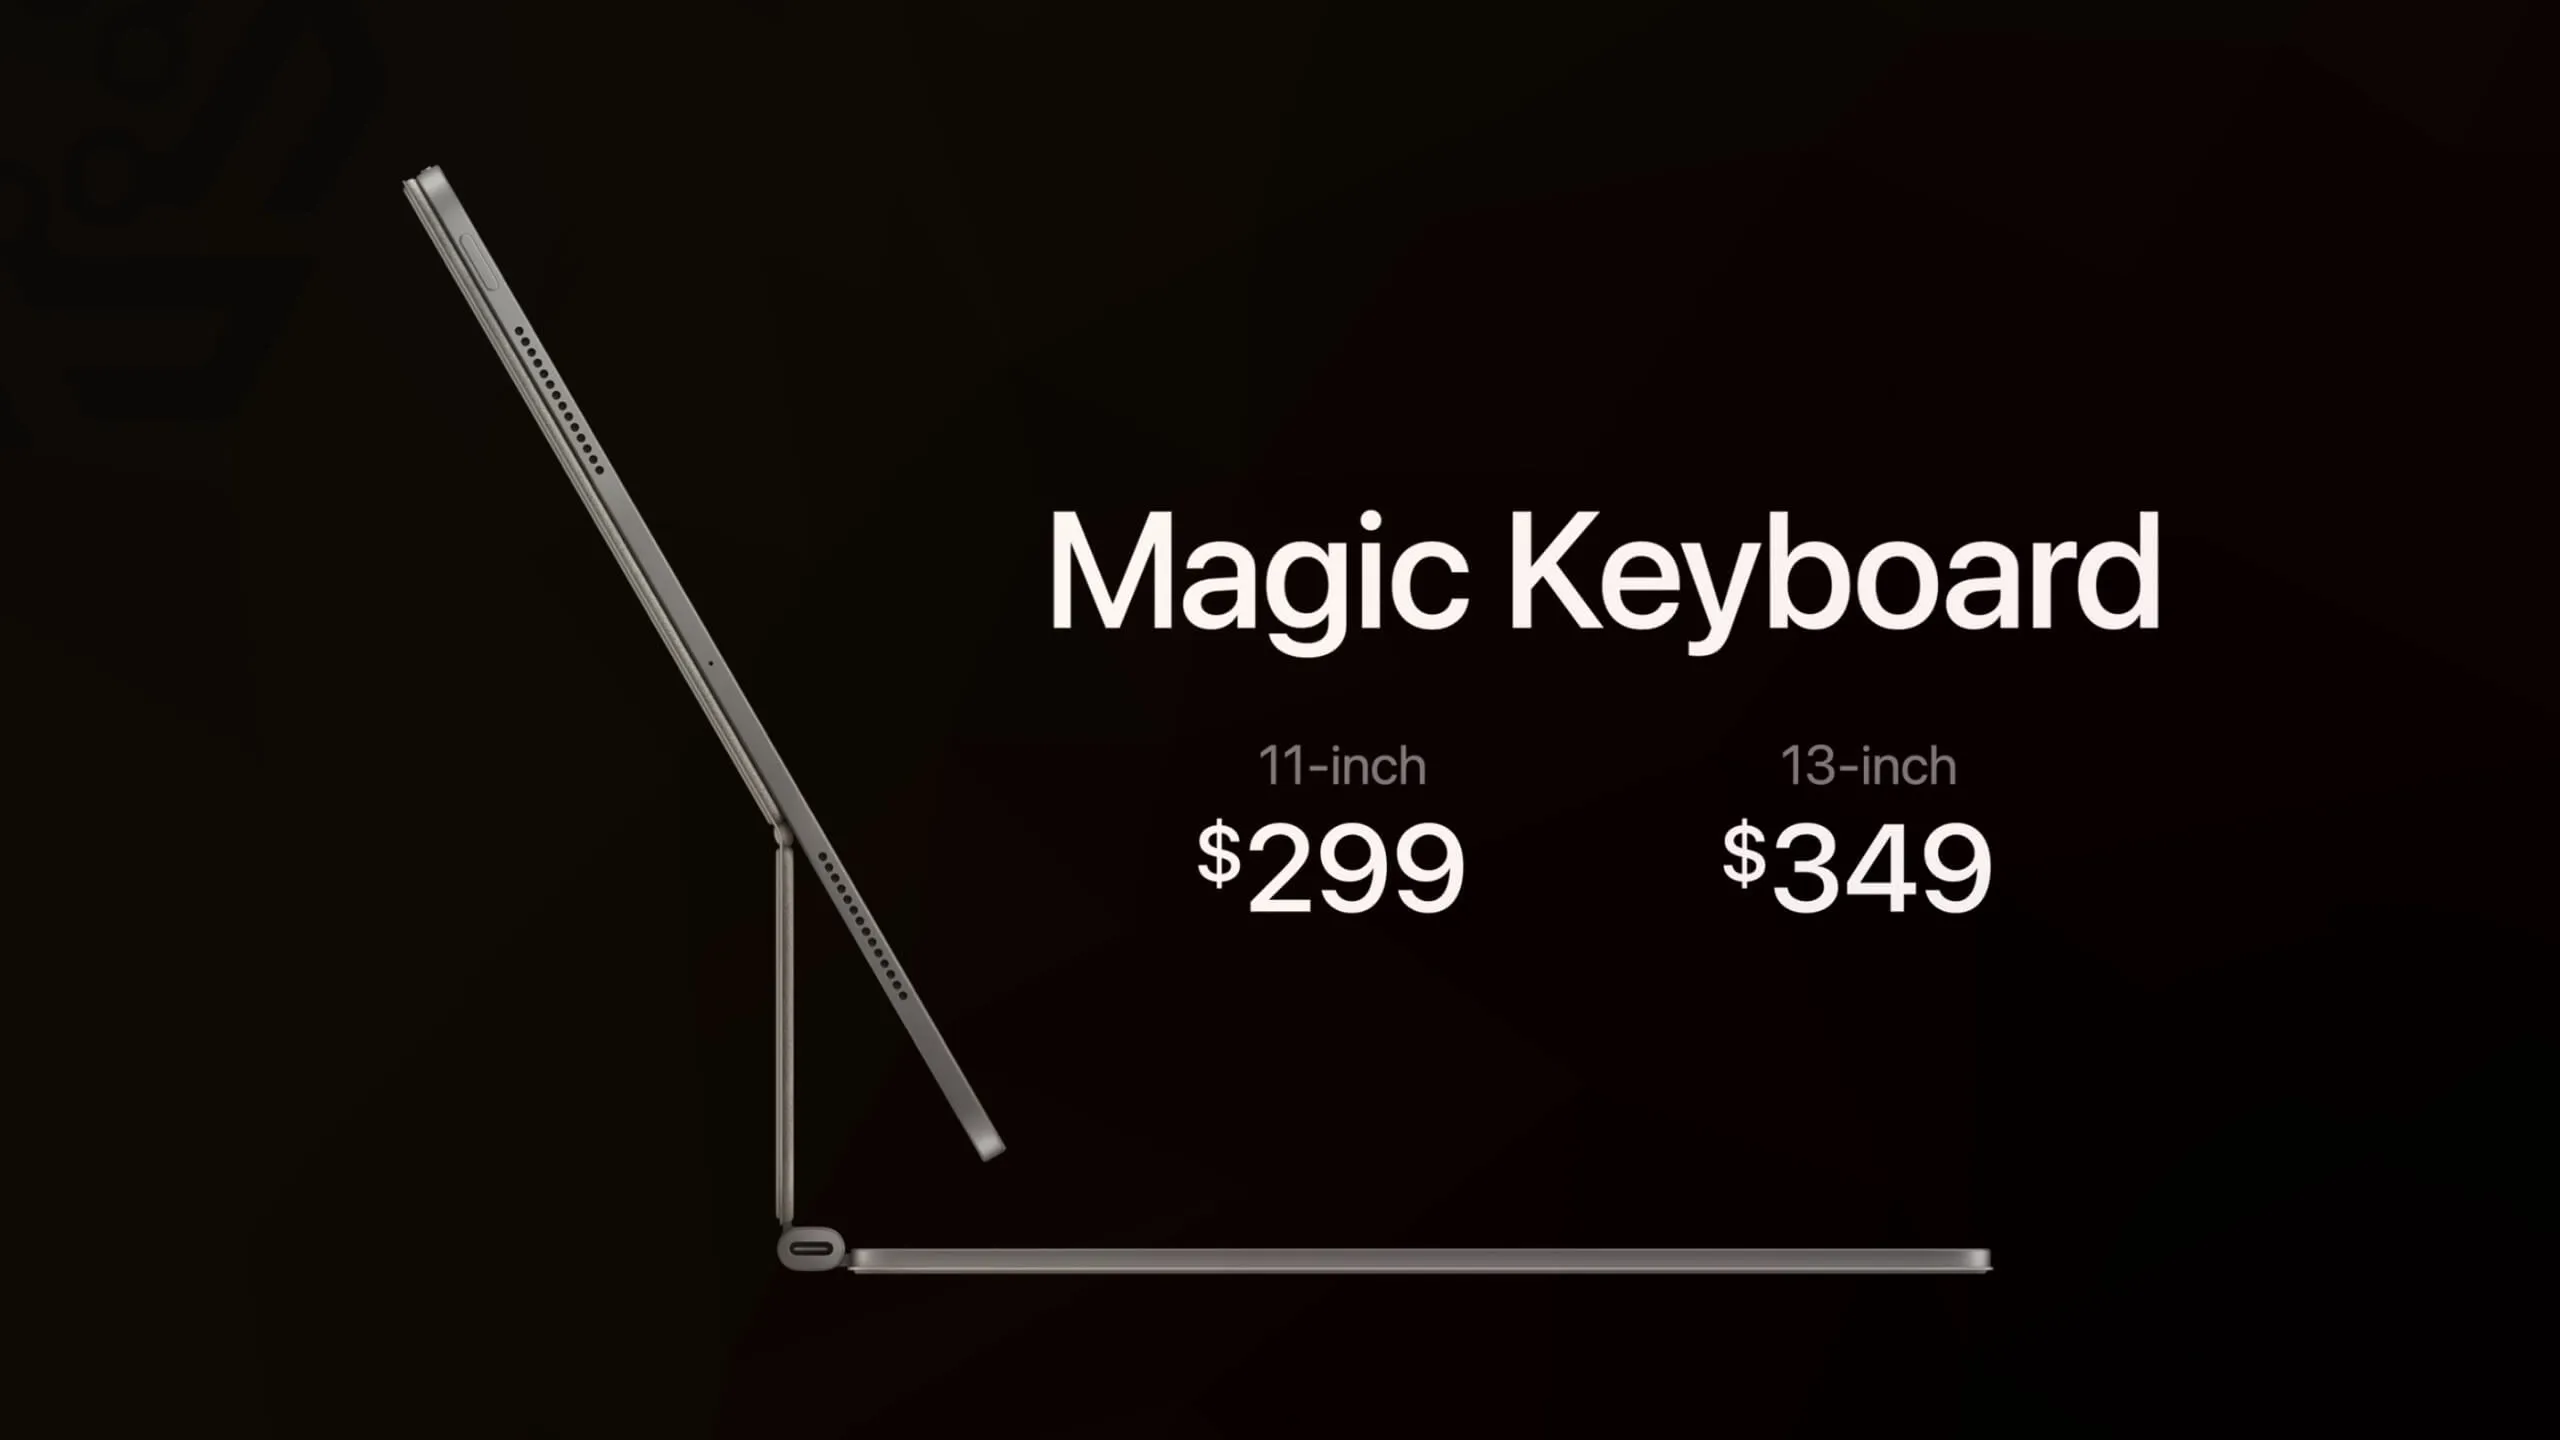 Magic Keyboard prices